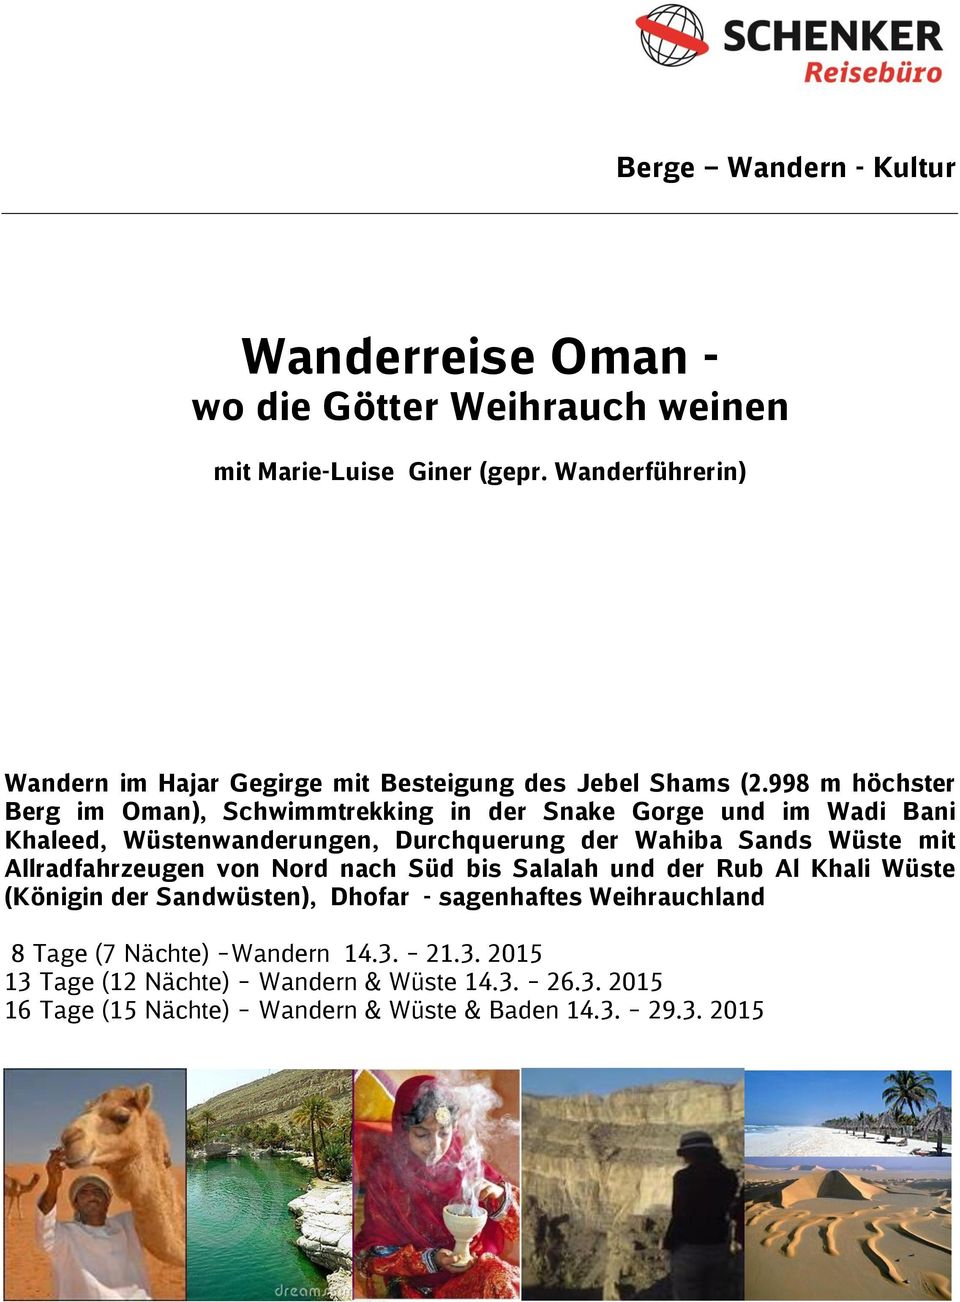 998 m höchster Berg im Oman), Schwimmtrekking in der Snake Gorge und im Wadi Bani Khaleed, Wüstenwanderungen, Durchquerung der Wahiba Sands Wüste mit